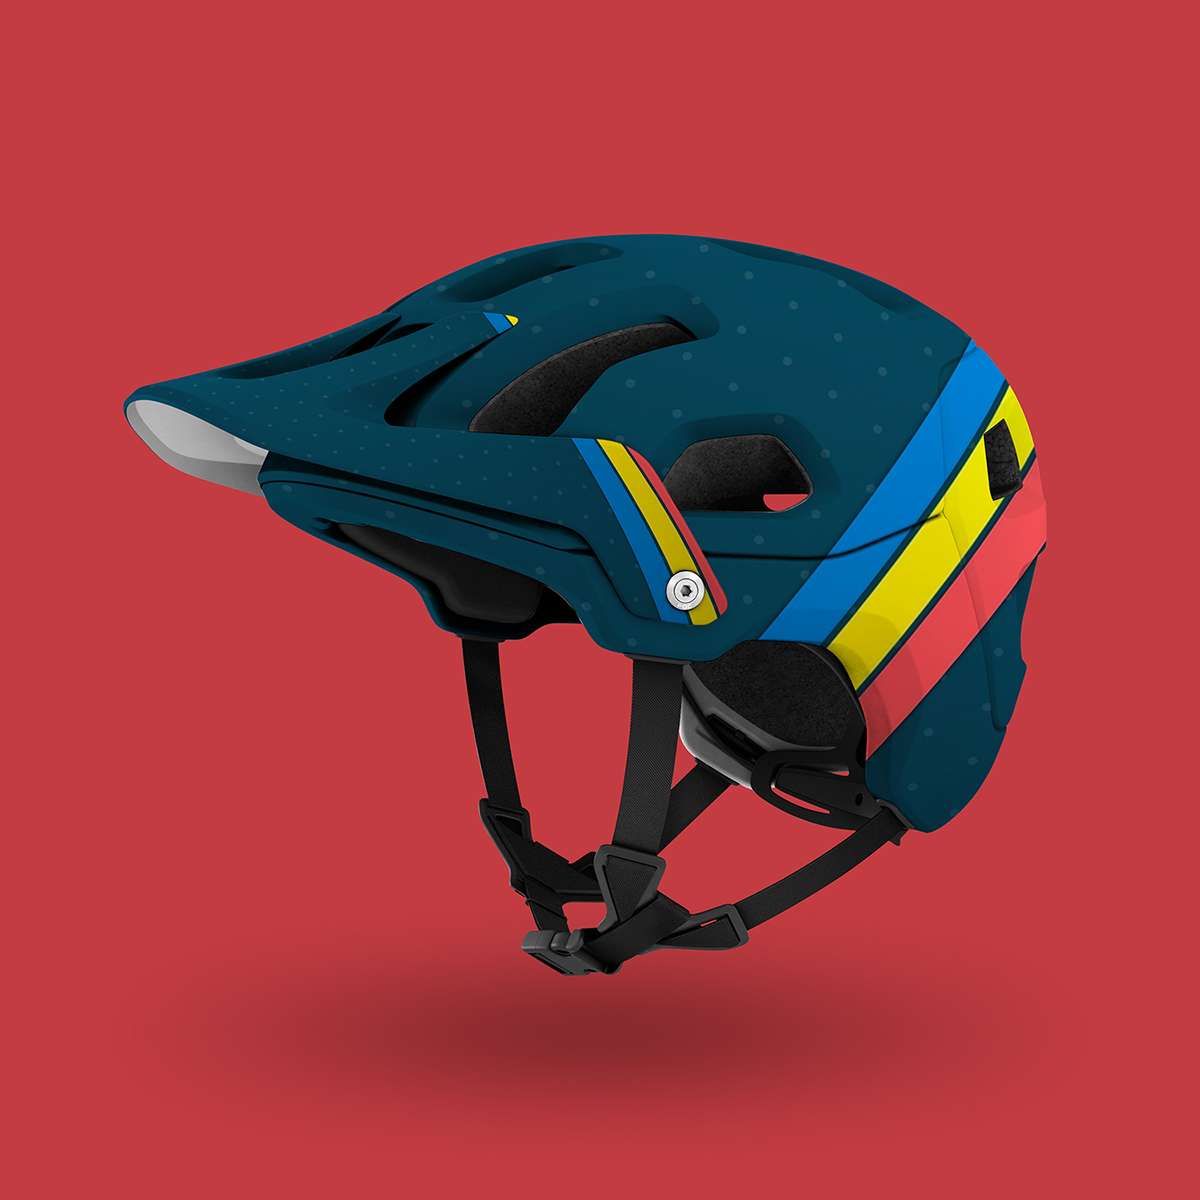 Download 4K Mountain Bike Helmet PSD mockup by Mockup Depot on Behance